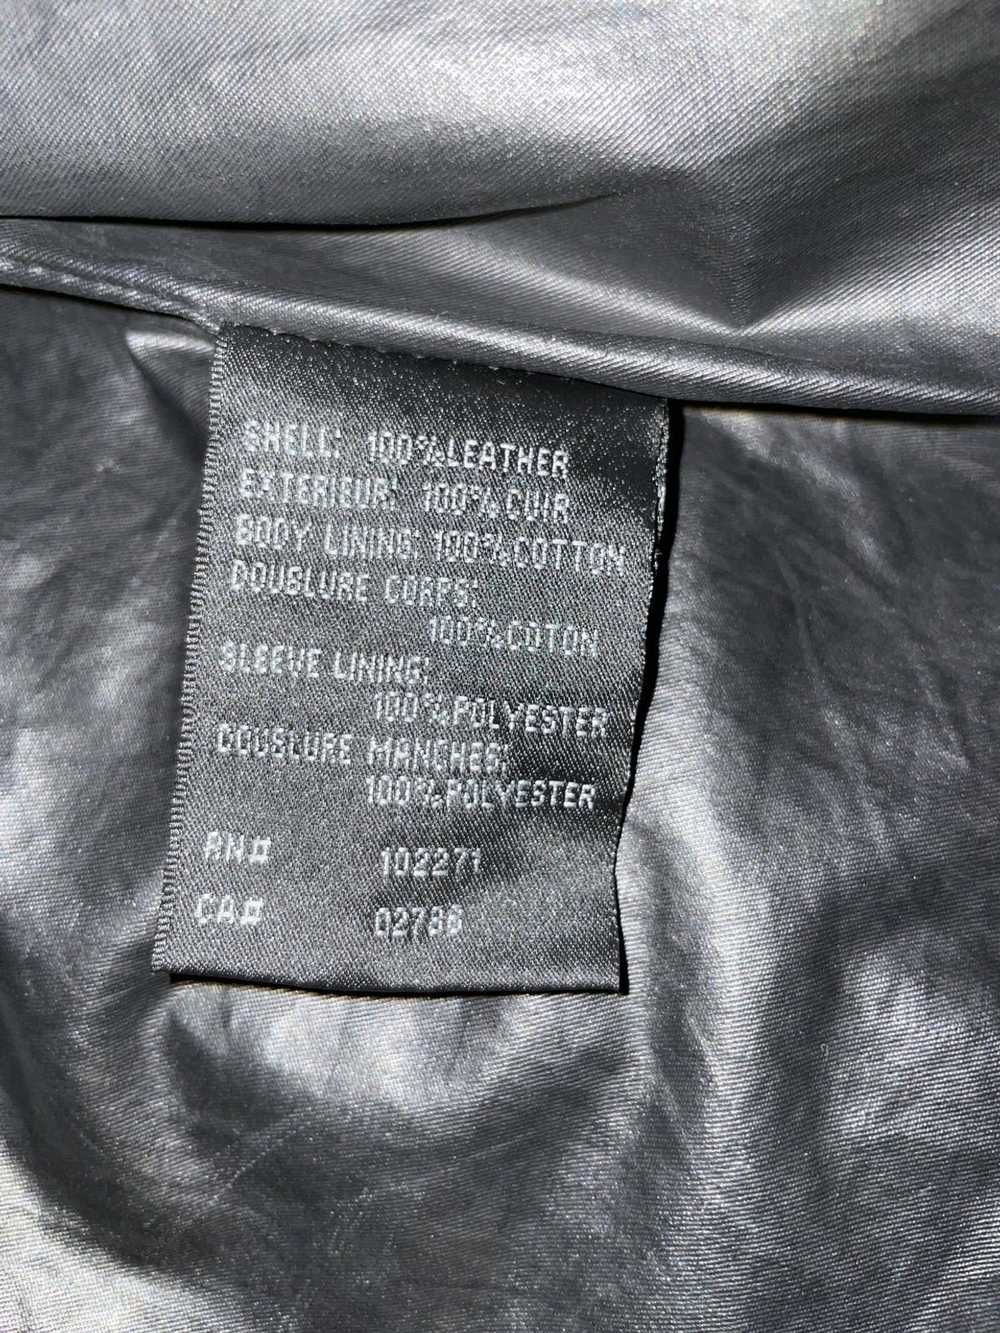 Rogue Leather shirt Jacket - image 6